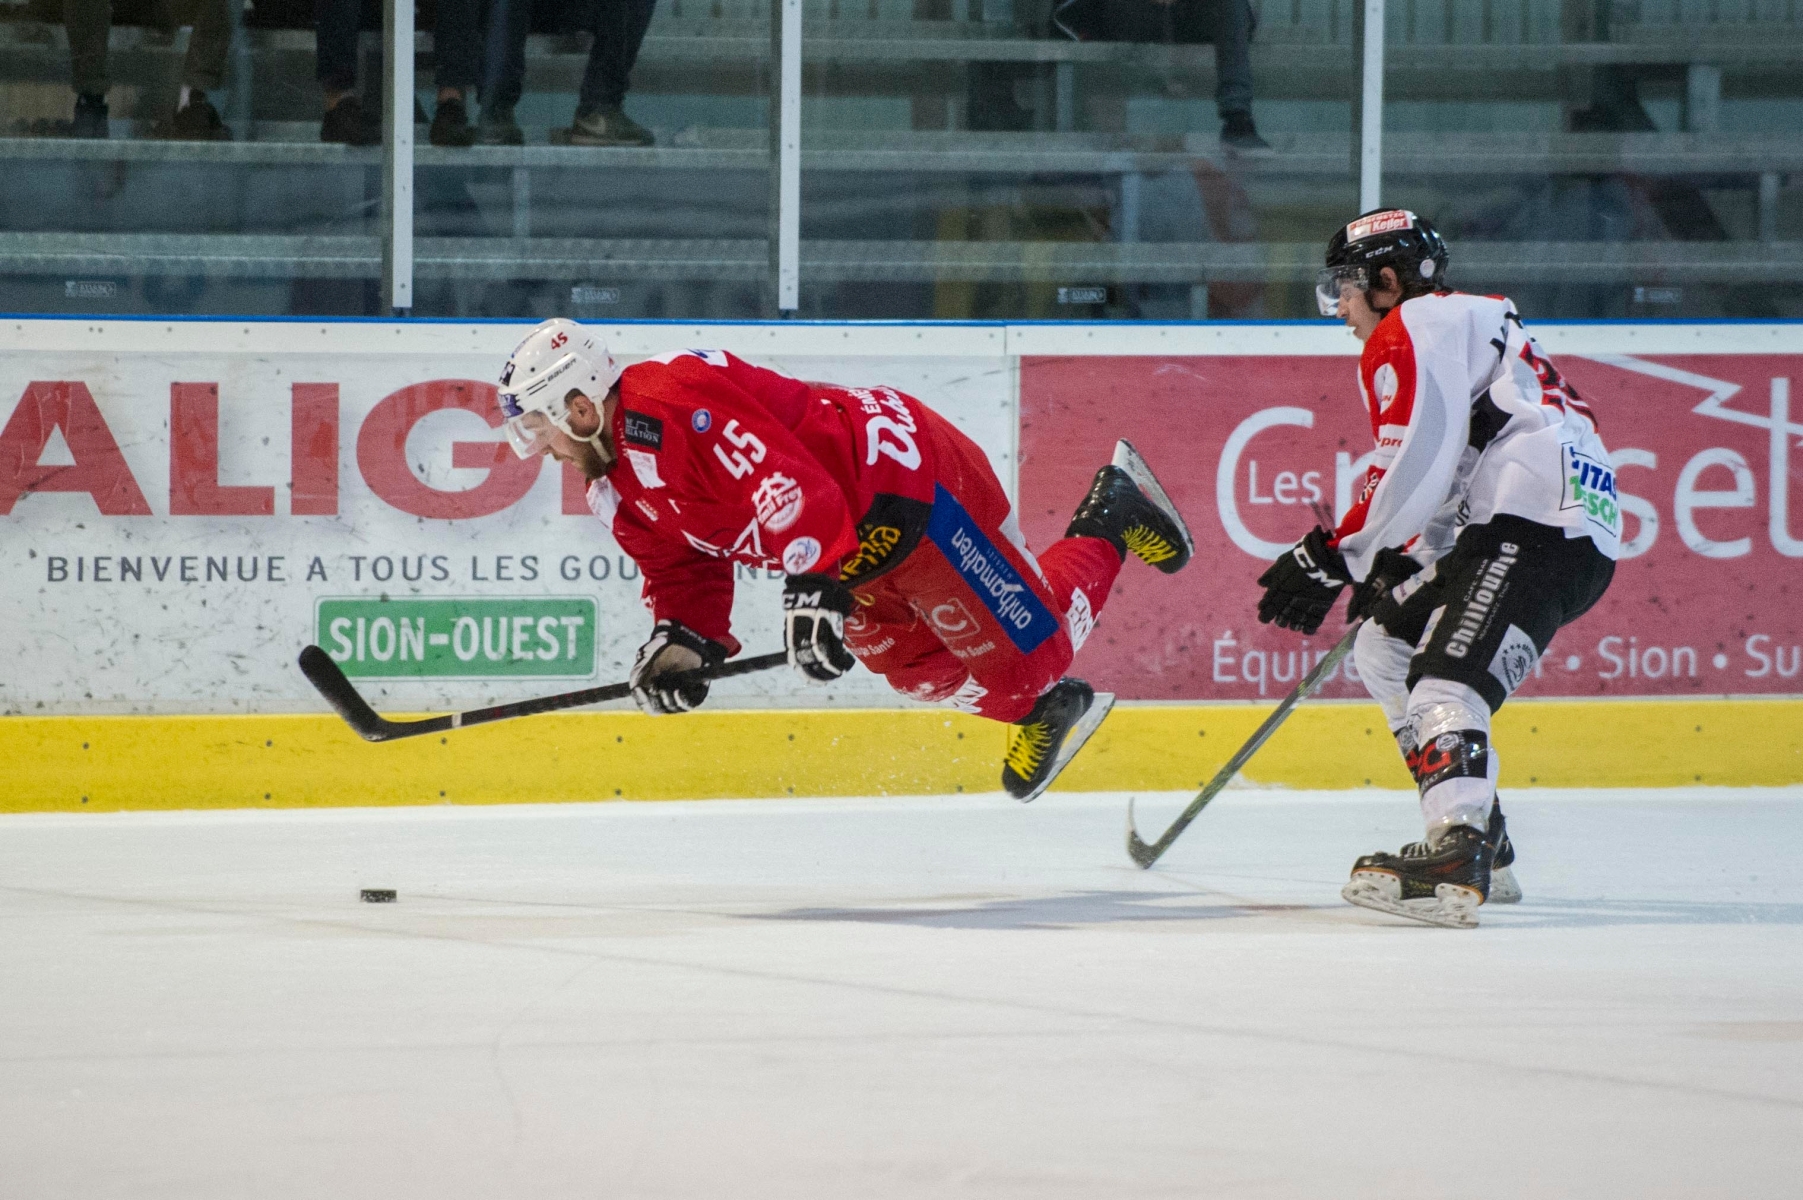 Match de Hockey opposant le Hc Sion-Nendaz 4 Vallées au EHC Thun en ce 7 avril 2016.



Sur l'image: Duel entre Andy Bering de Sion et Martin Keller de Thun